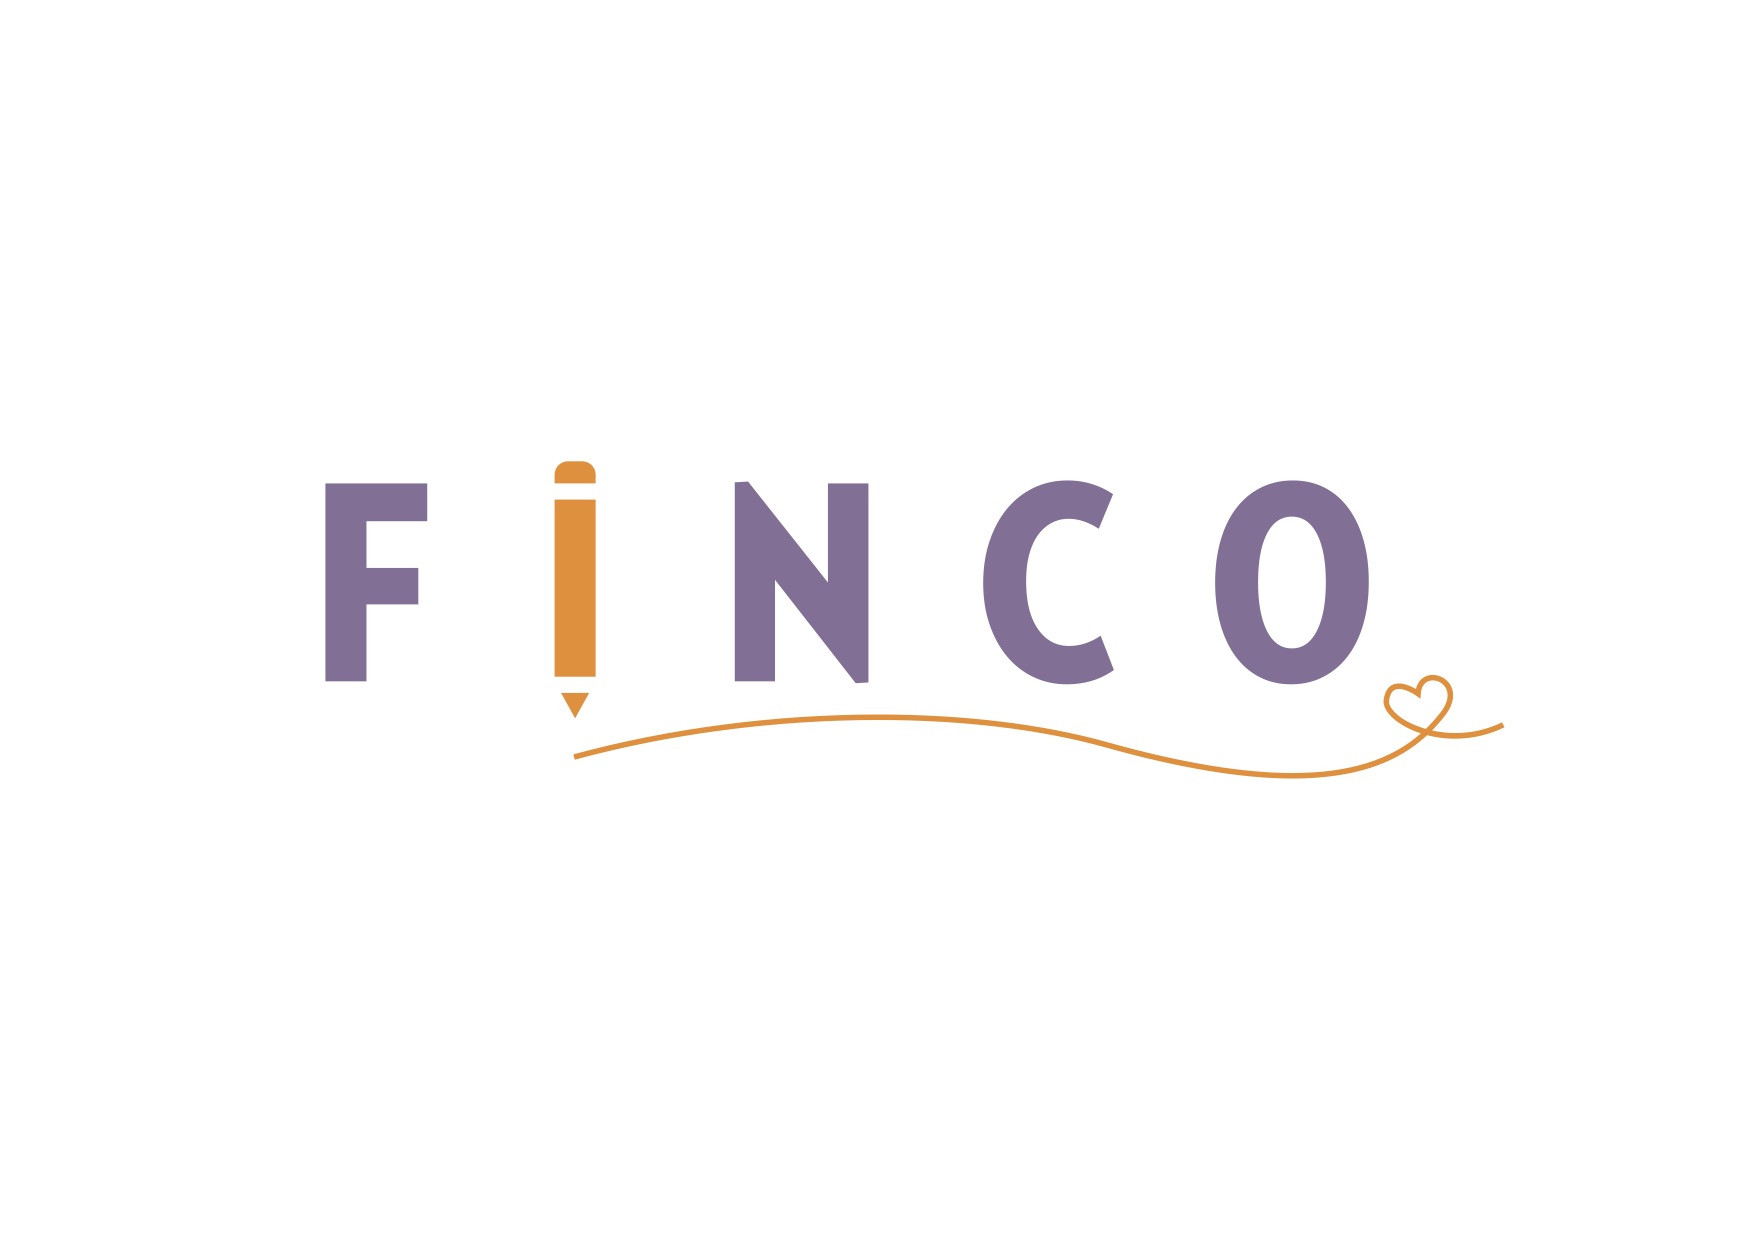 FINCO